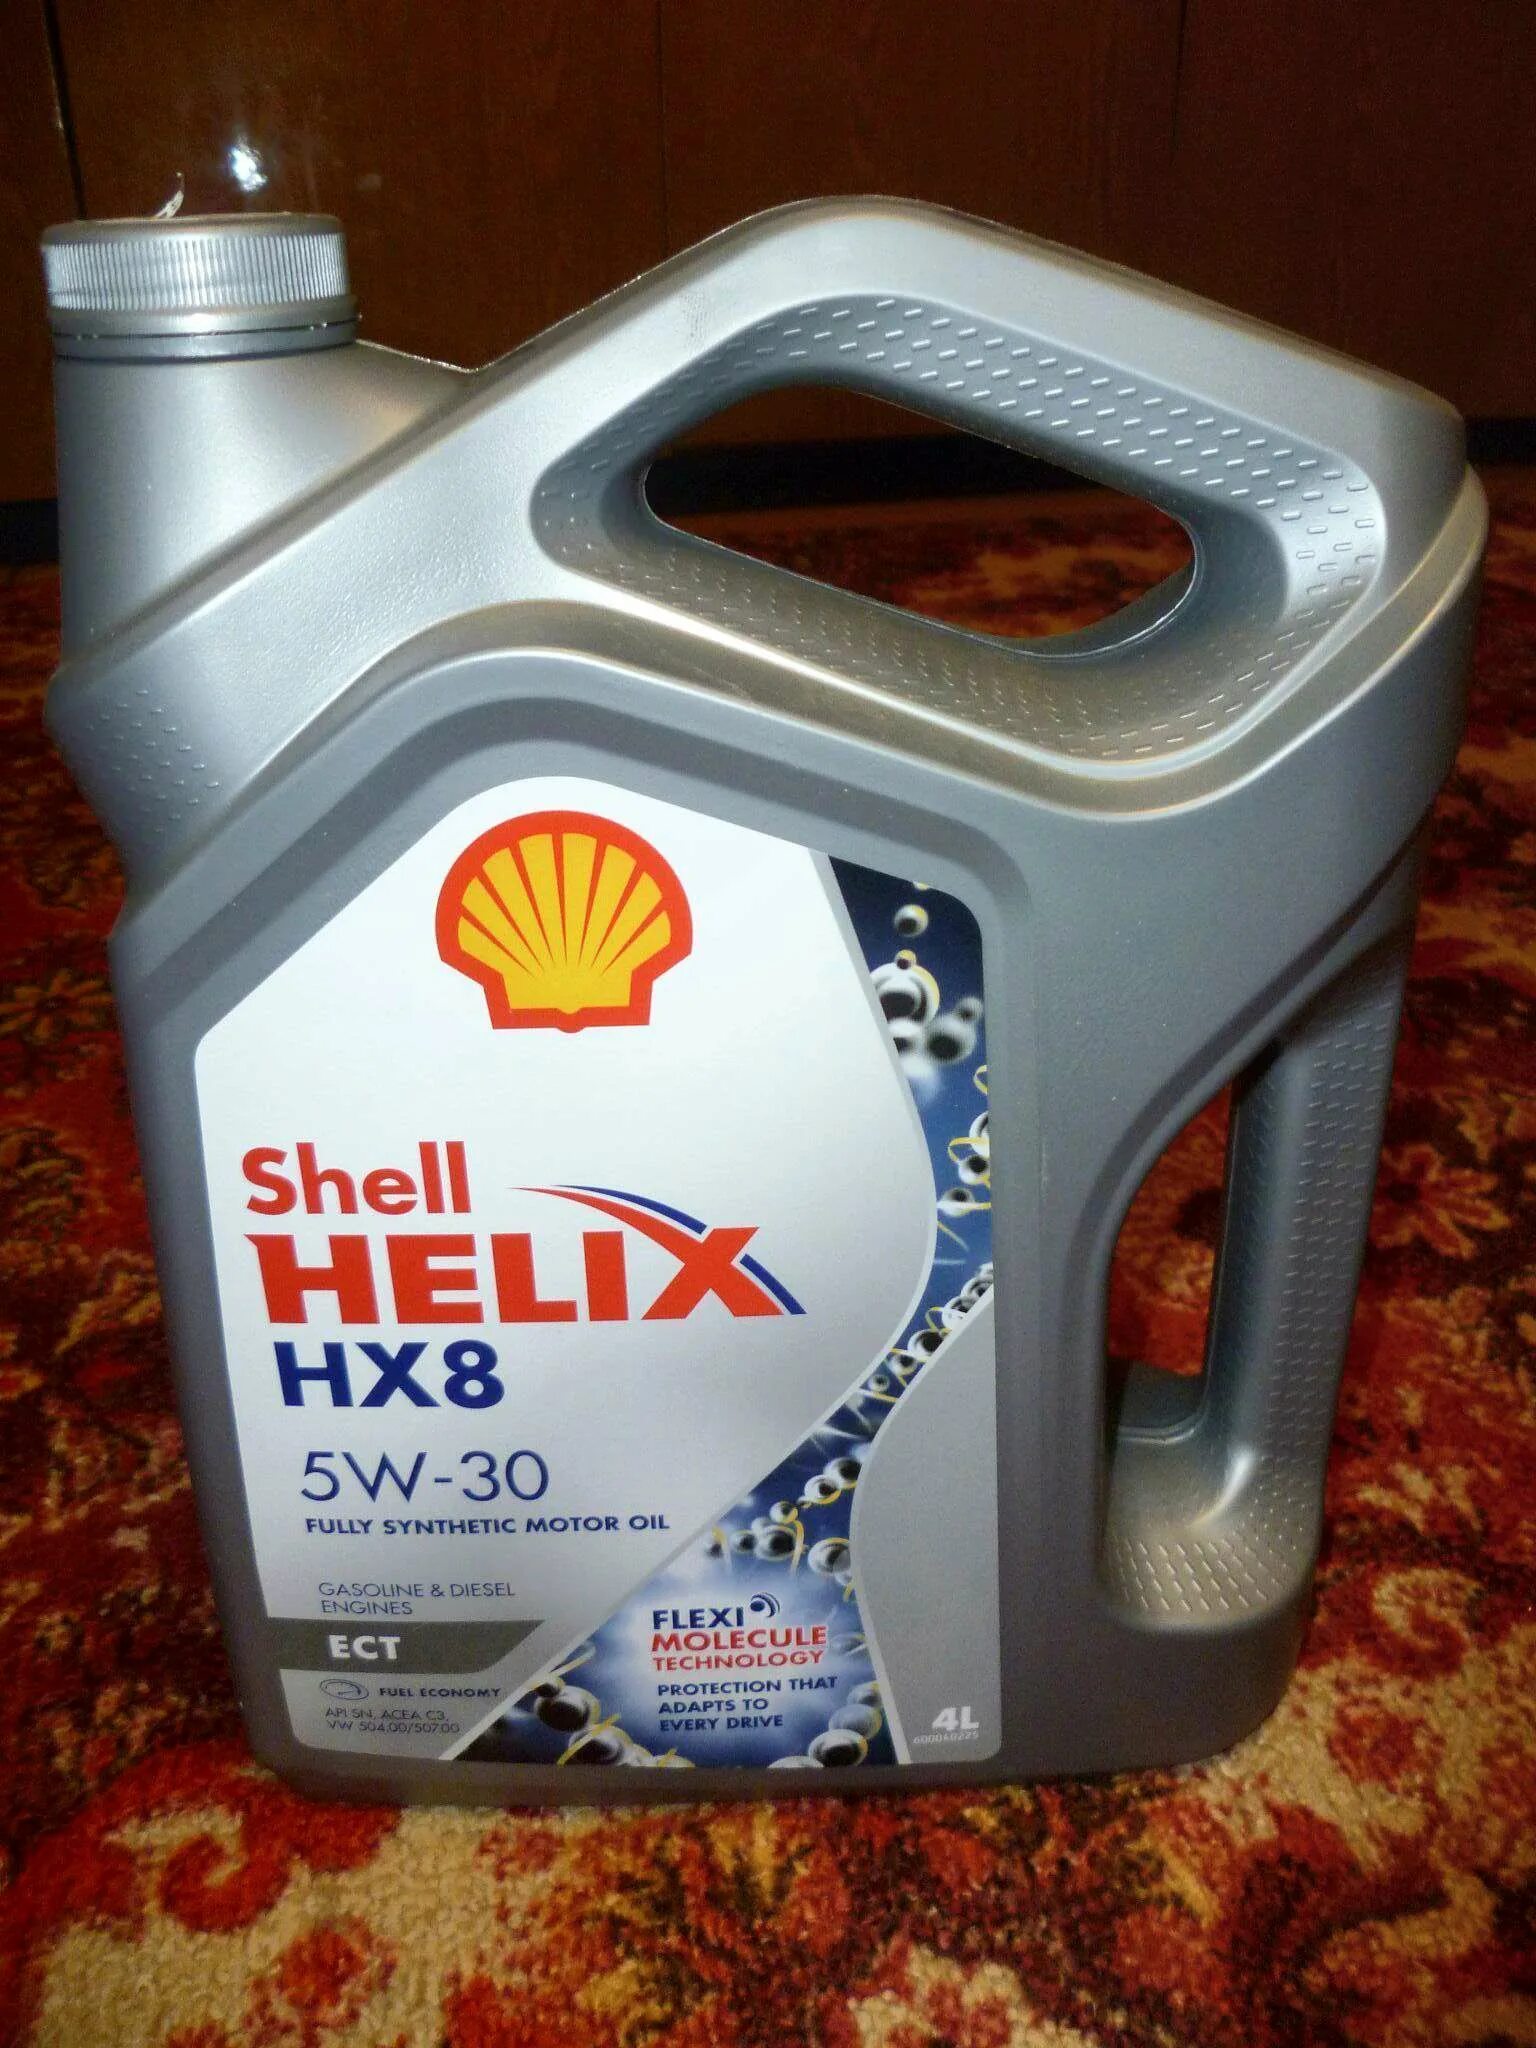 Shell hx8 5w30 купить. Shell hx8 5w30 ect. Hx8 ect 5w30. Helix hx8 ect 5w-30. Shell Helix hx8 ect 5w-30.